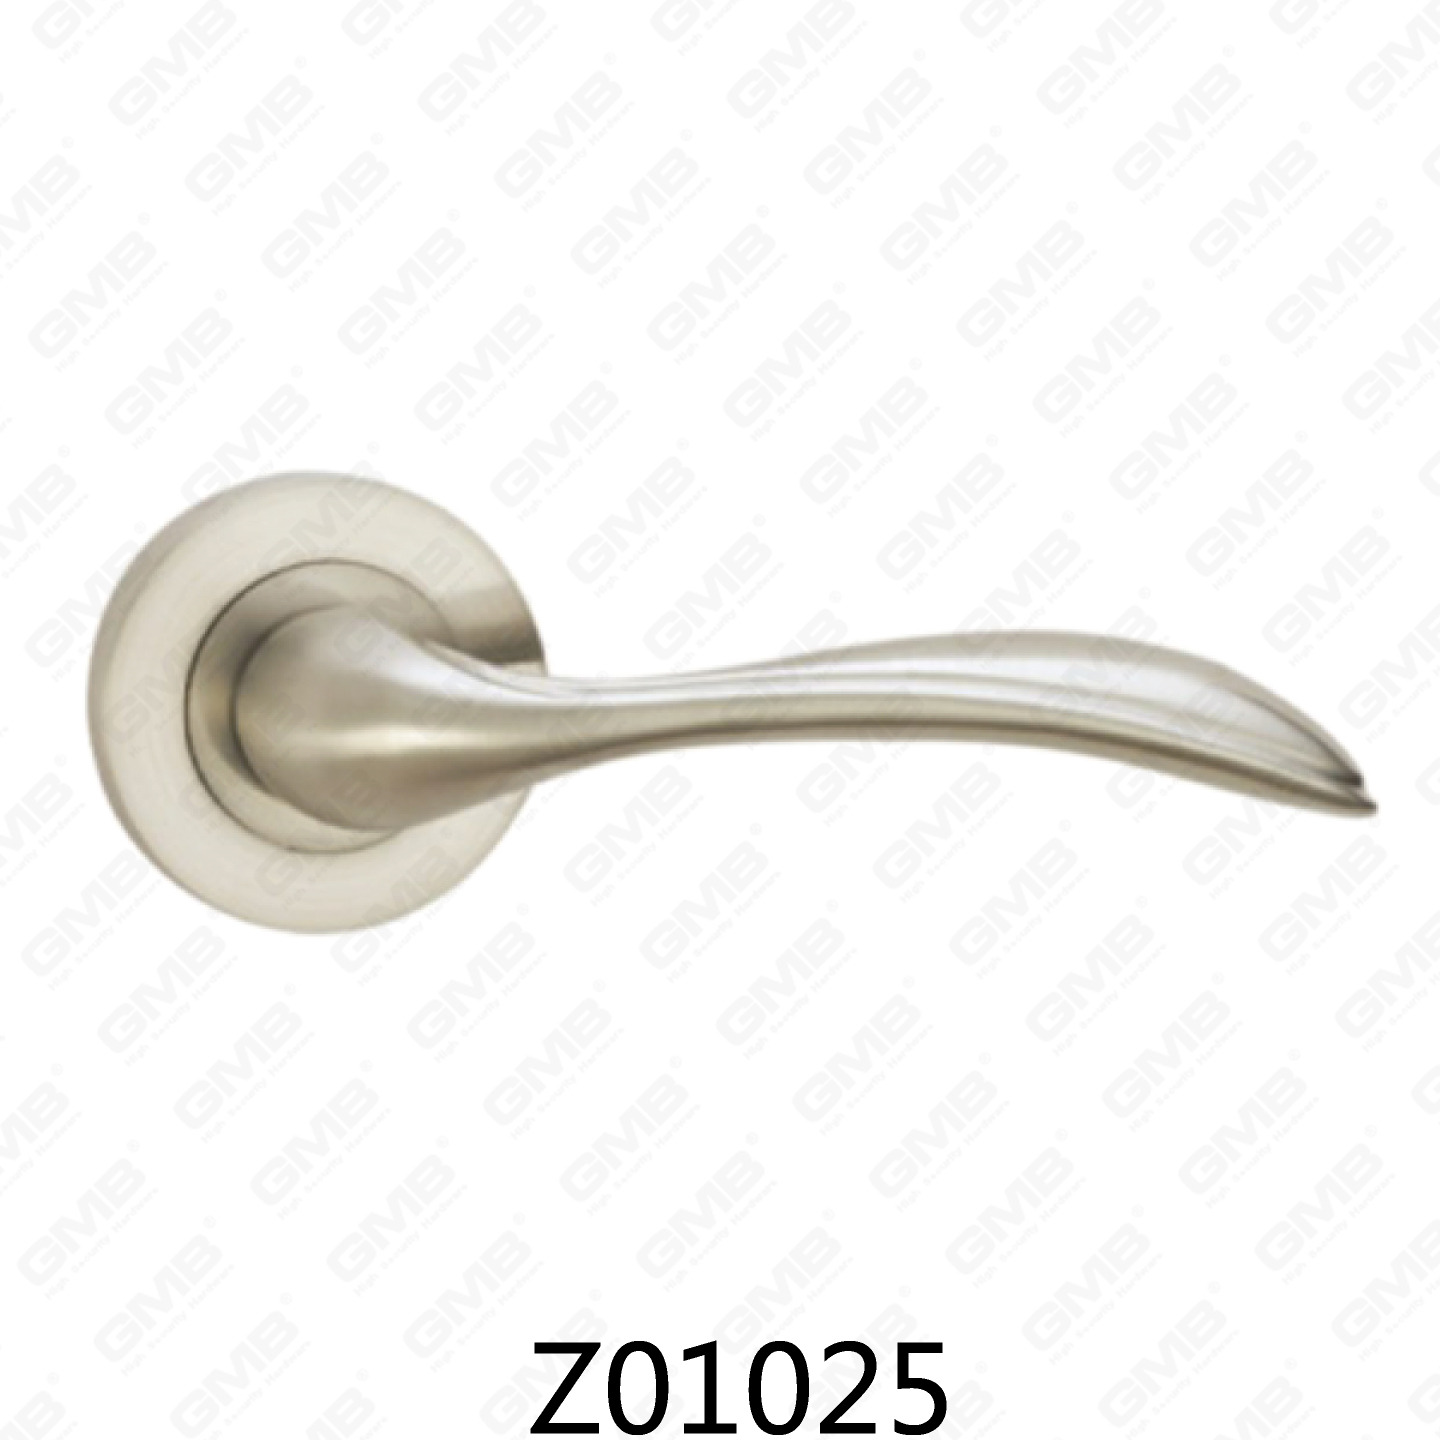 Asa de puerta de roseta de aluminio de aleación de zinc Zamak con roseta redonda (Z01025)